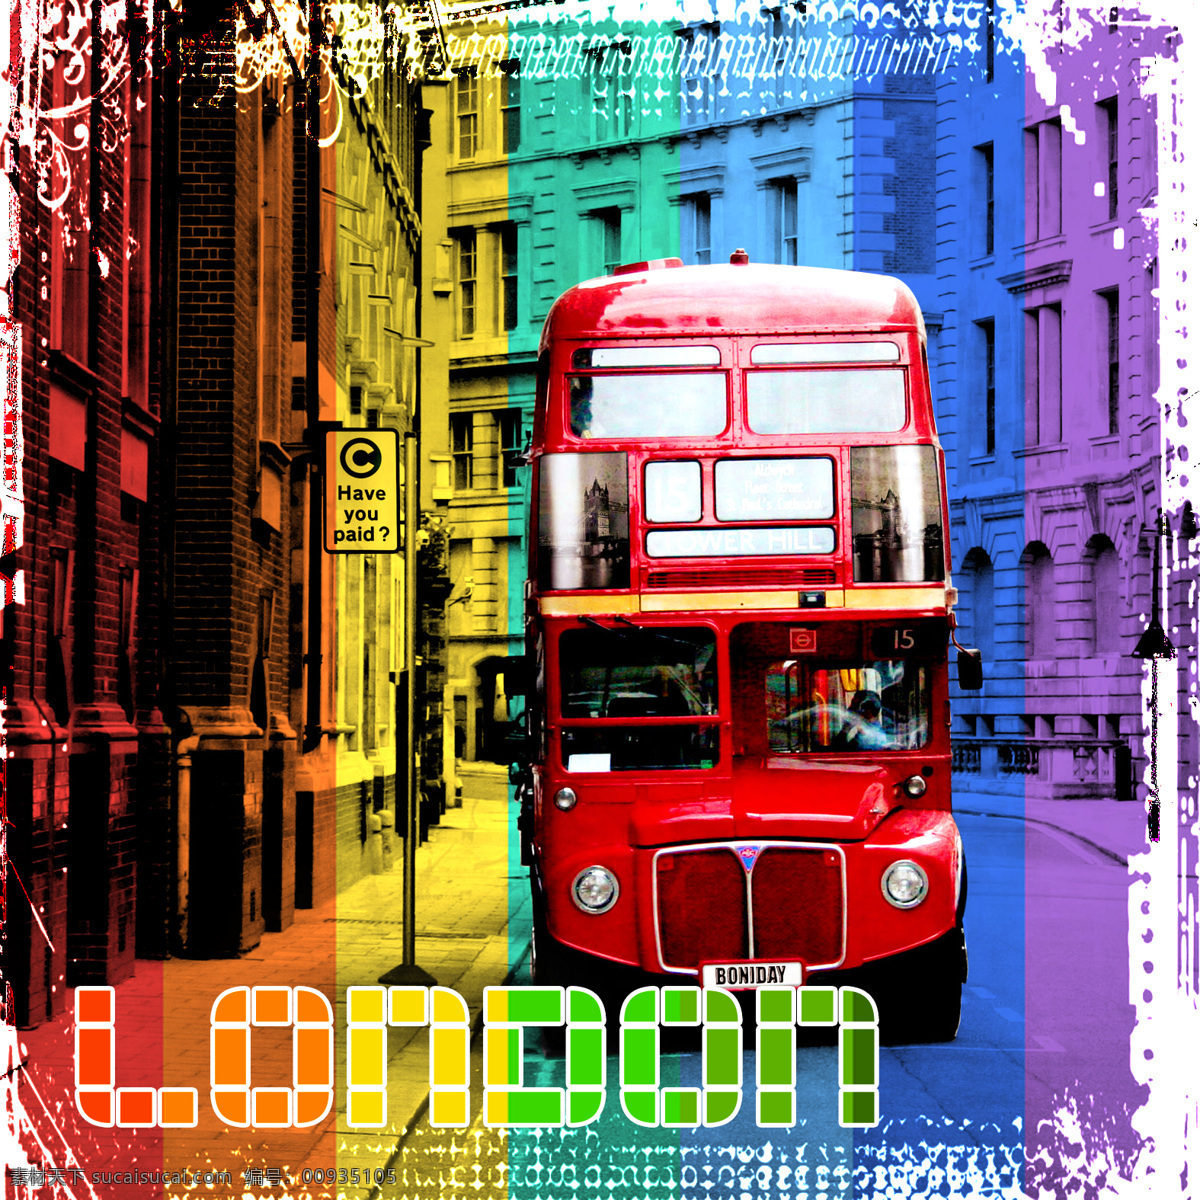 交通工具 伦敦 现代科技 双层 巴士 设计素材 模板下载 伦敦双层巴士 london 多彩伦敦 英国伦敦 工艺图片